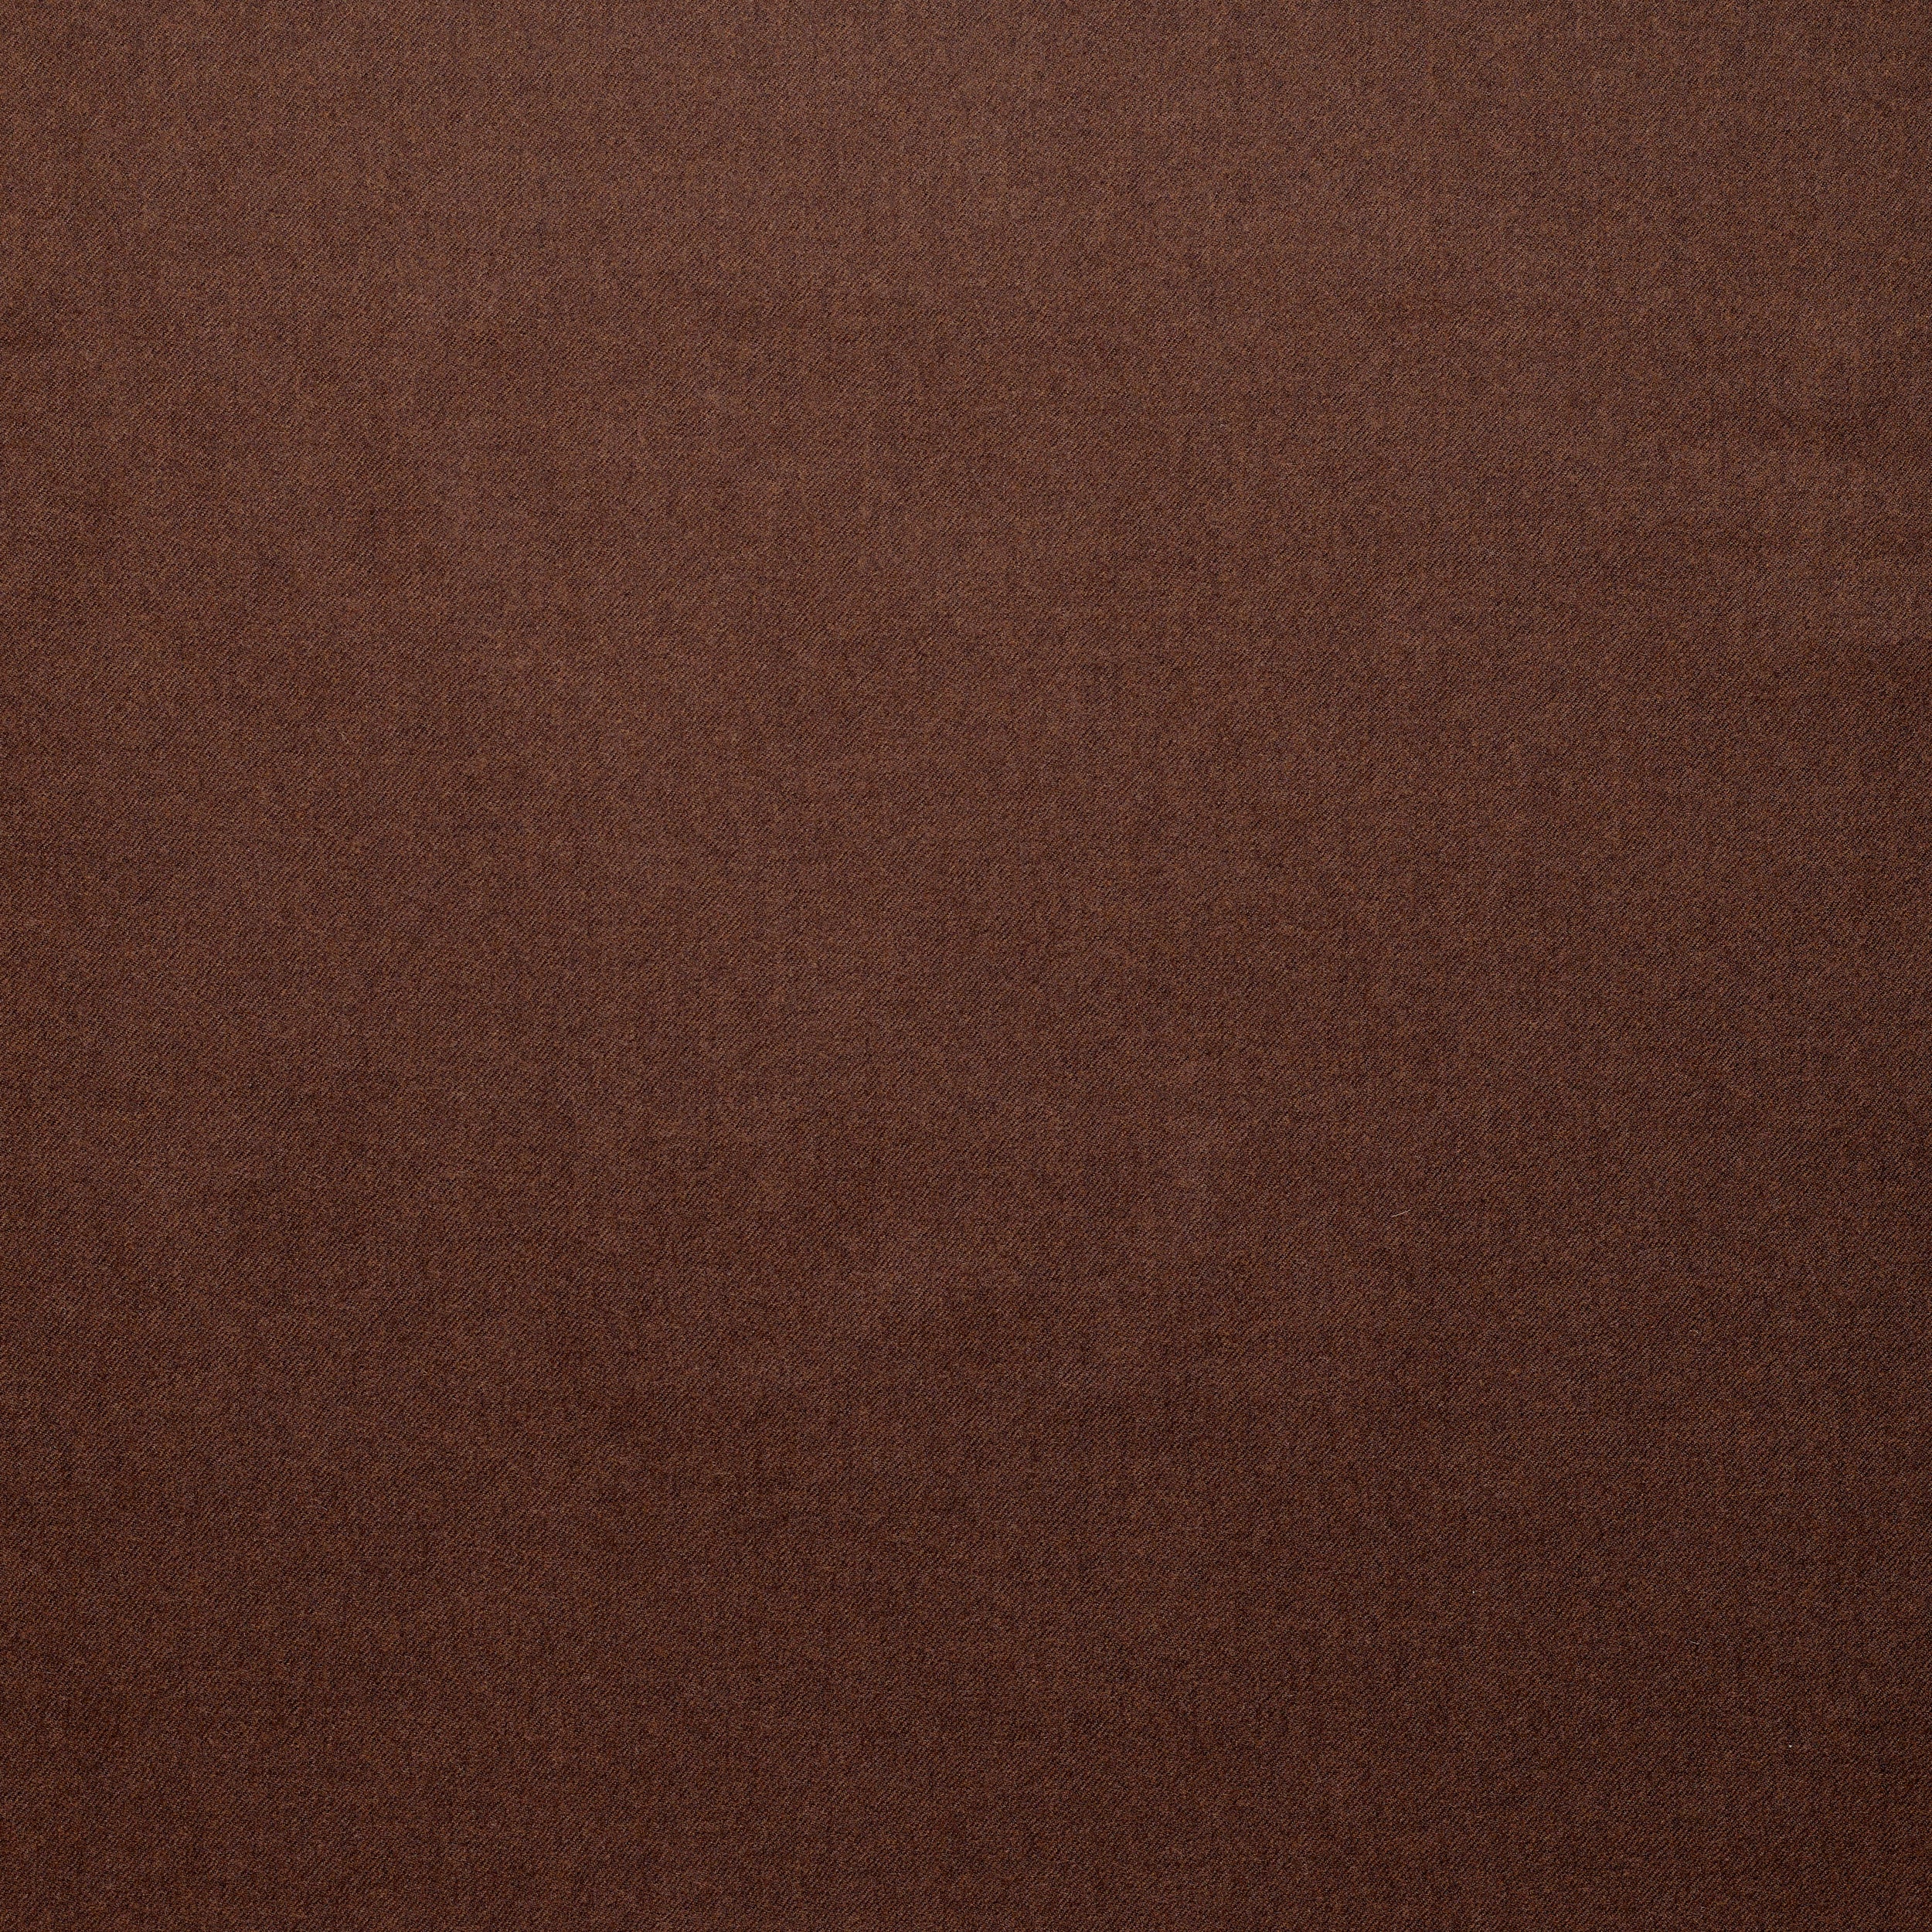 WF2-43 : Worsted Flannel Chestnut Brown Plain Mélange